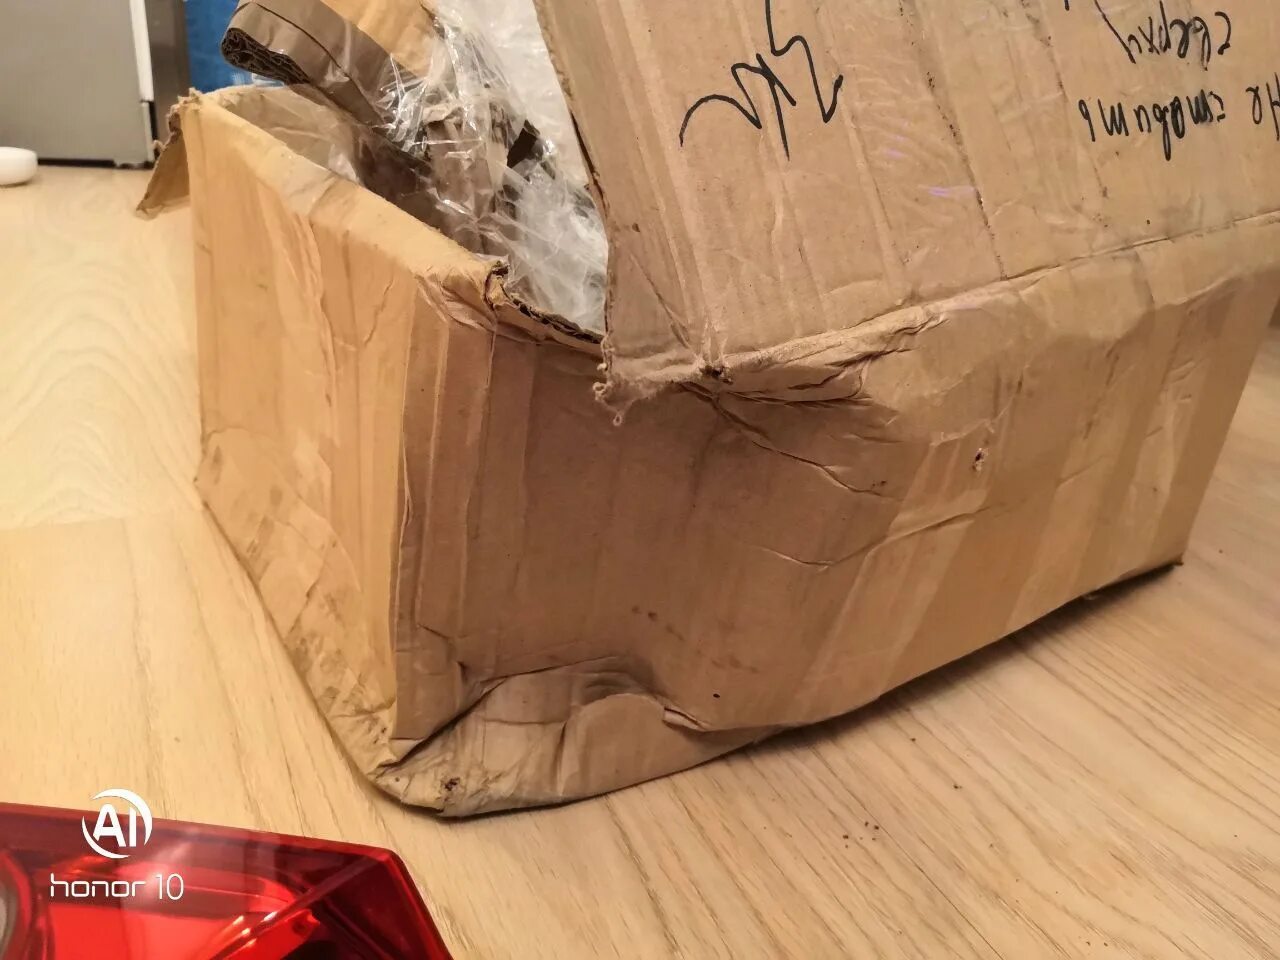 Сломанная посылка. Разбитая упаковка посылки. Разбитая коробка. Испорченные коробки на складе.